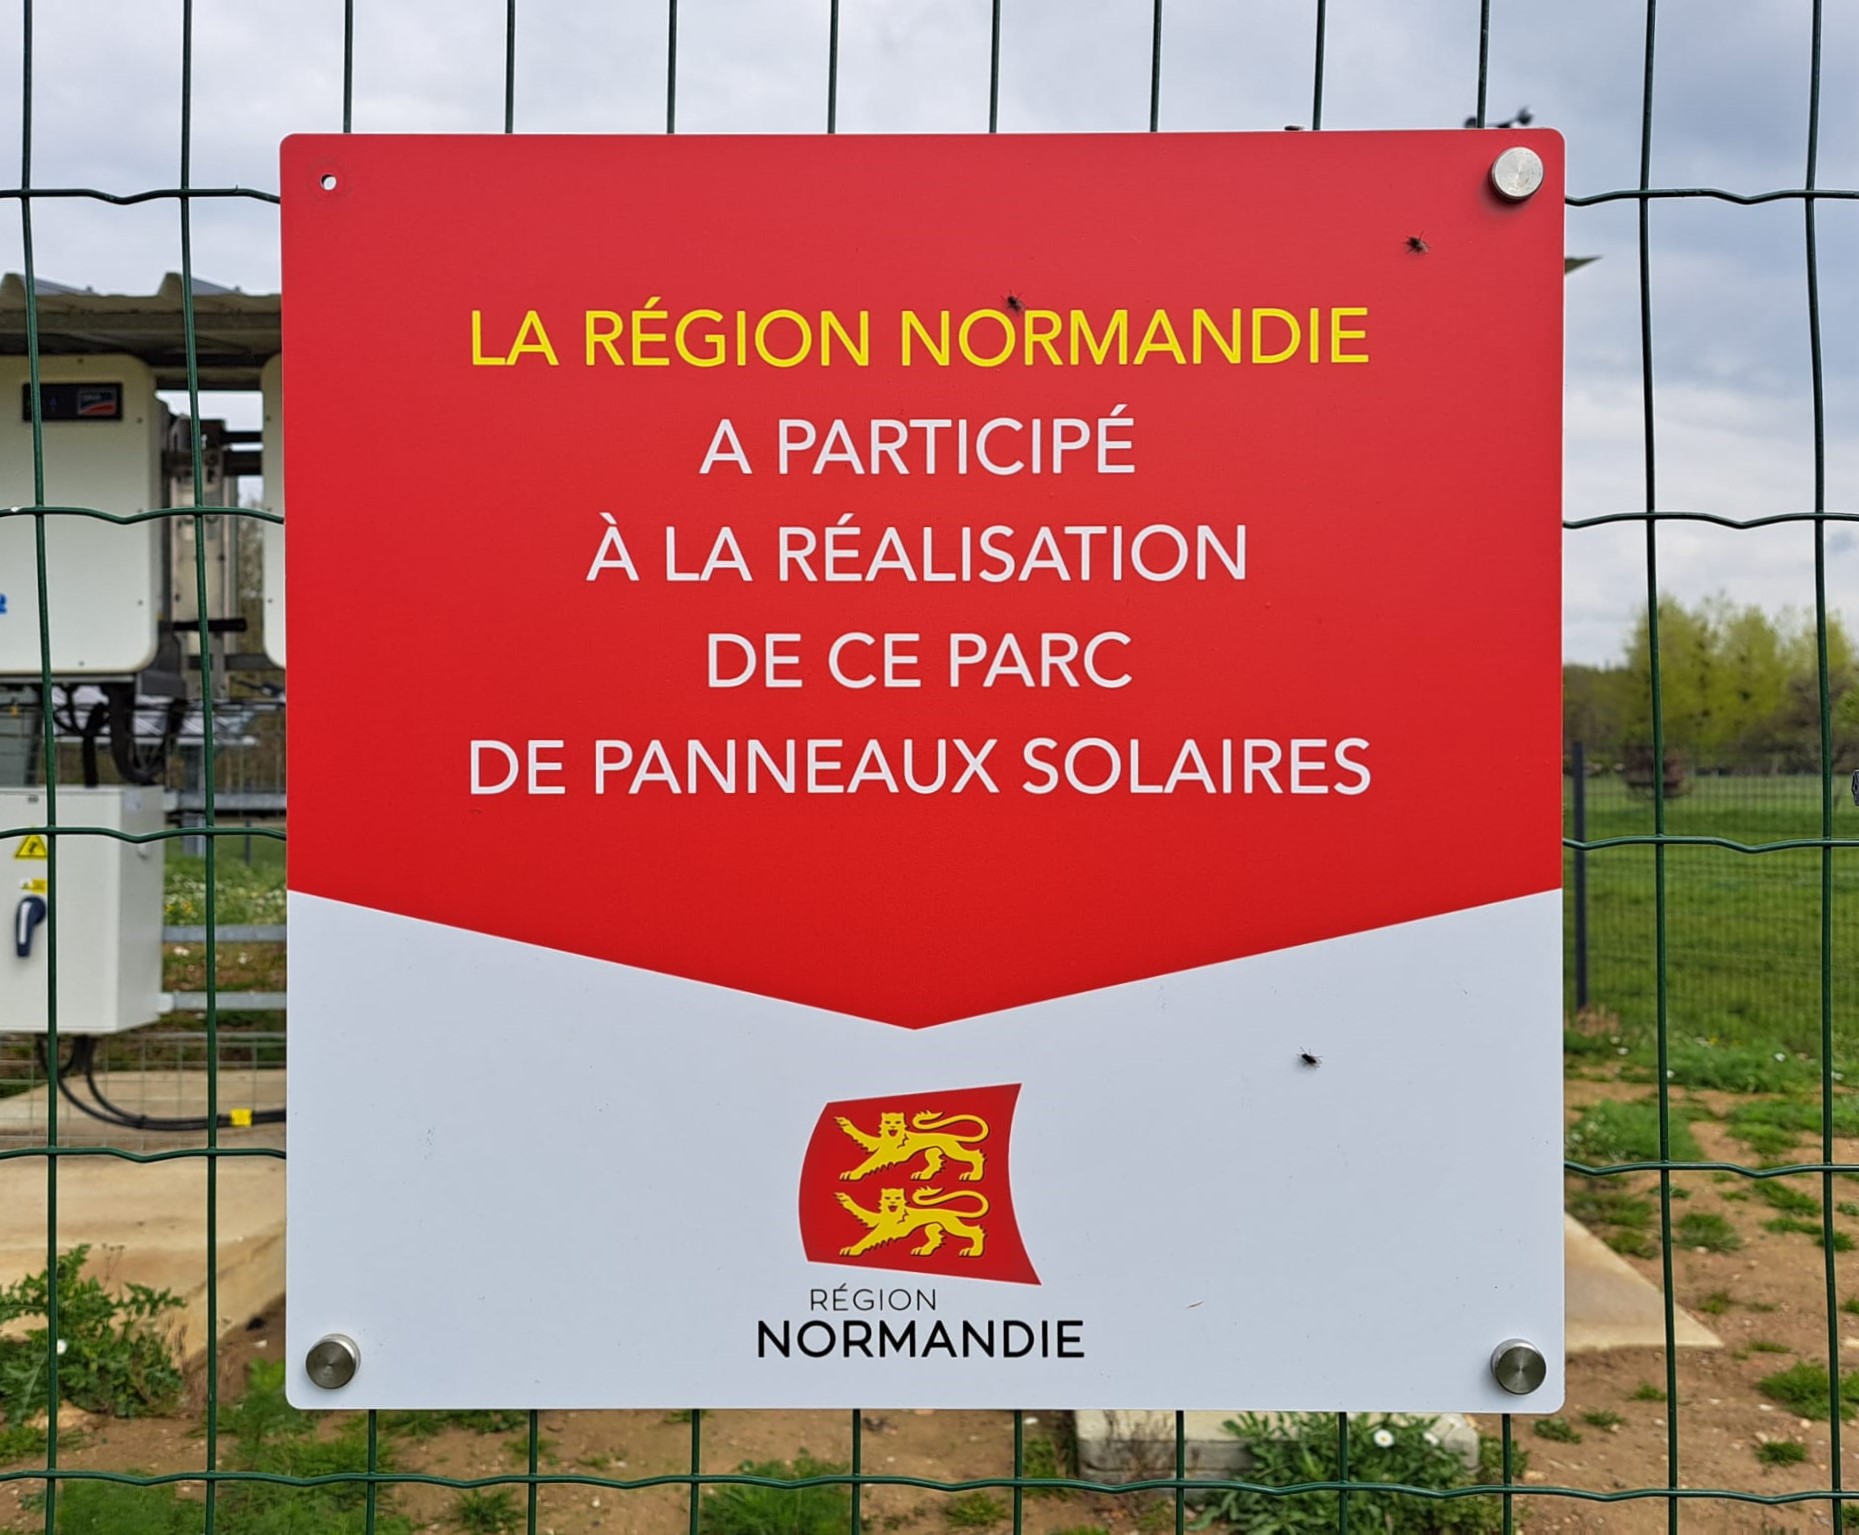 Affiche mettant en avant le fait que la région Normandie a participé à la réalisation de ce projet